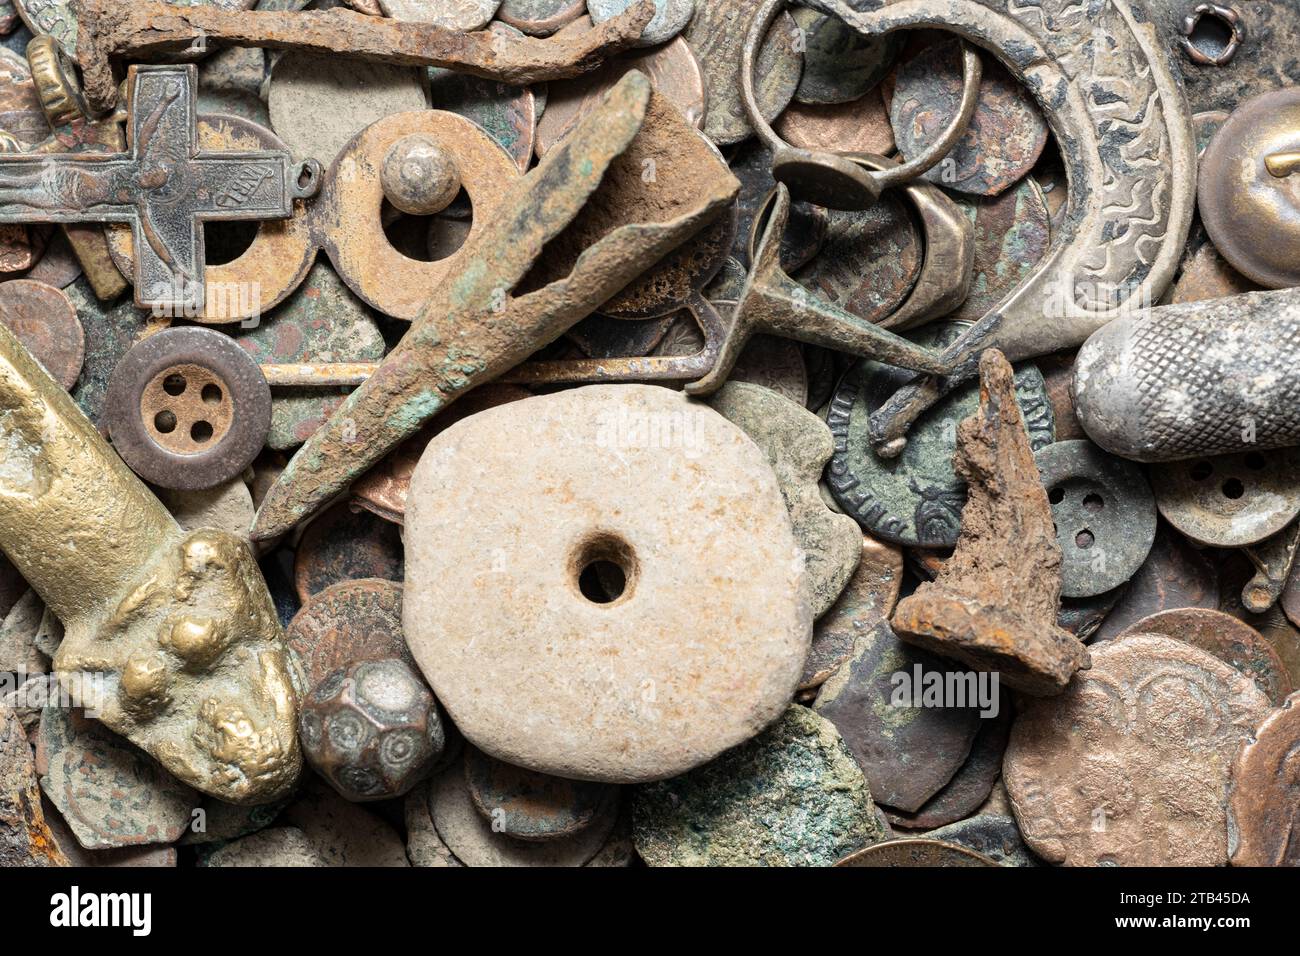 Una collezione di antiche reliquie di ferro, comprese monete, punte di freccia, unghie, proiettili, e una croce, manufatti storici del passato di epoche passate. Foto Stock